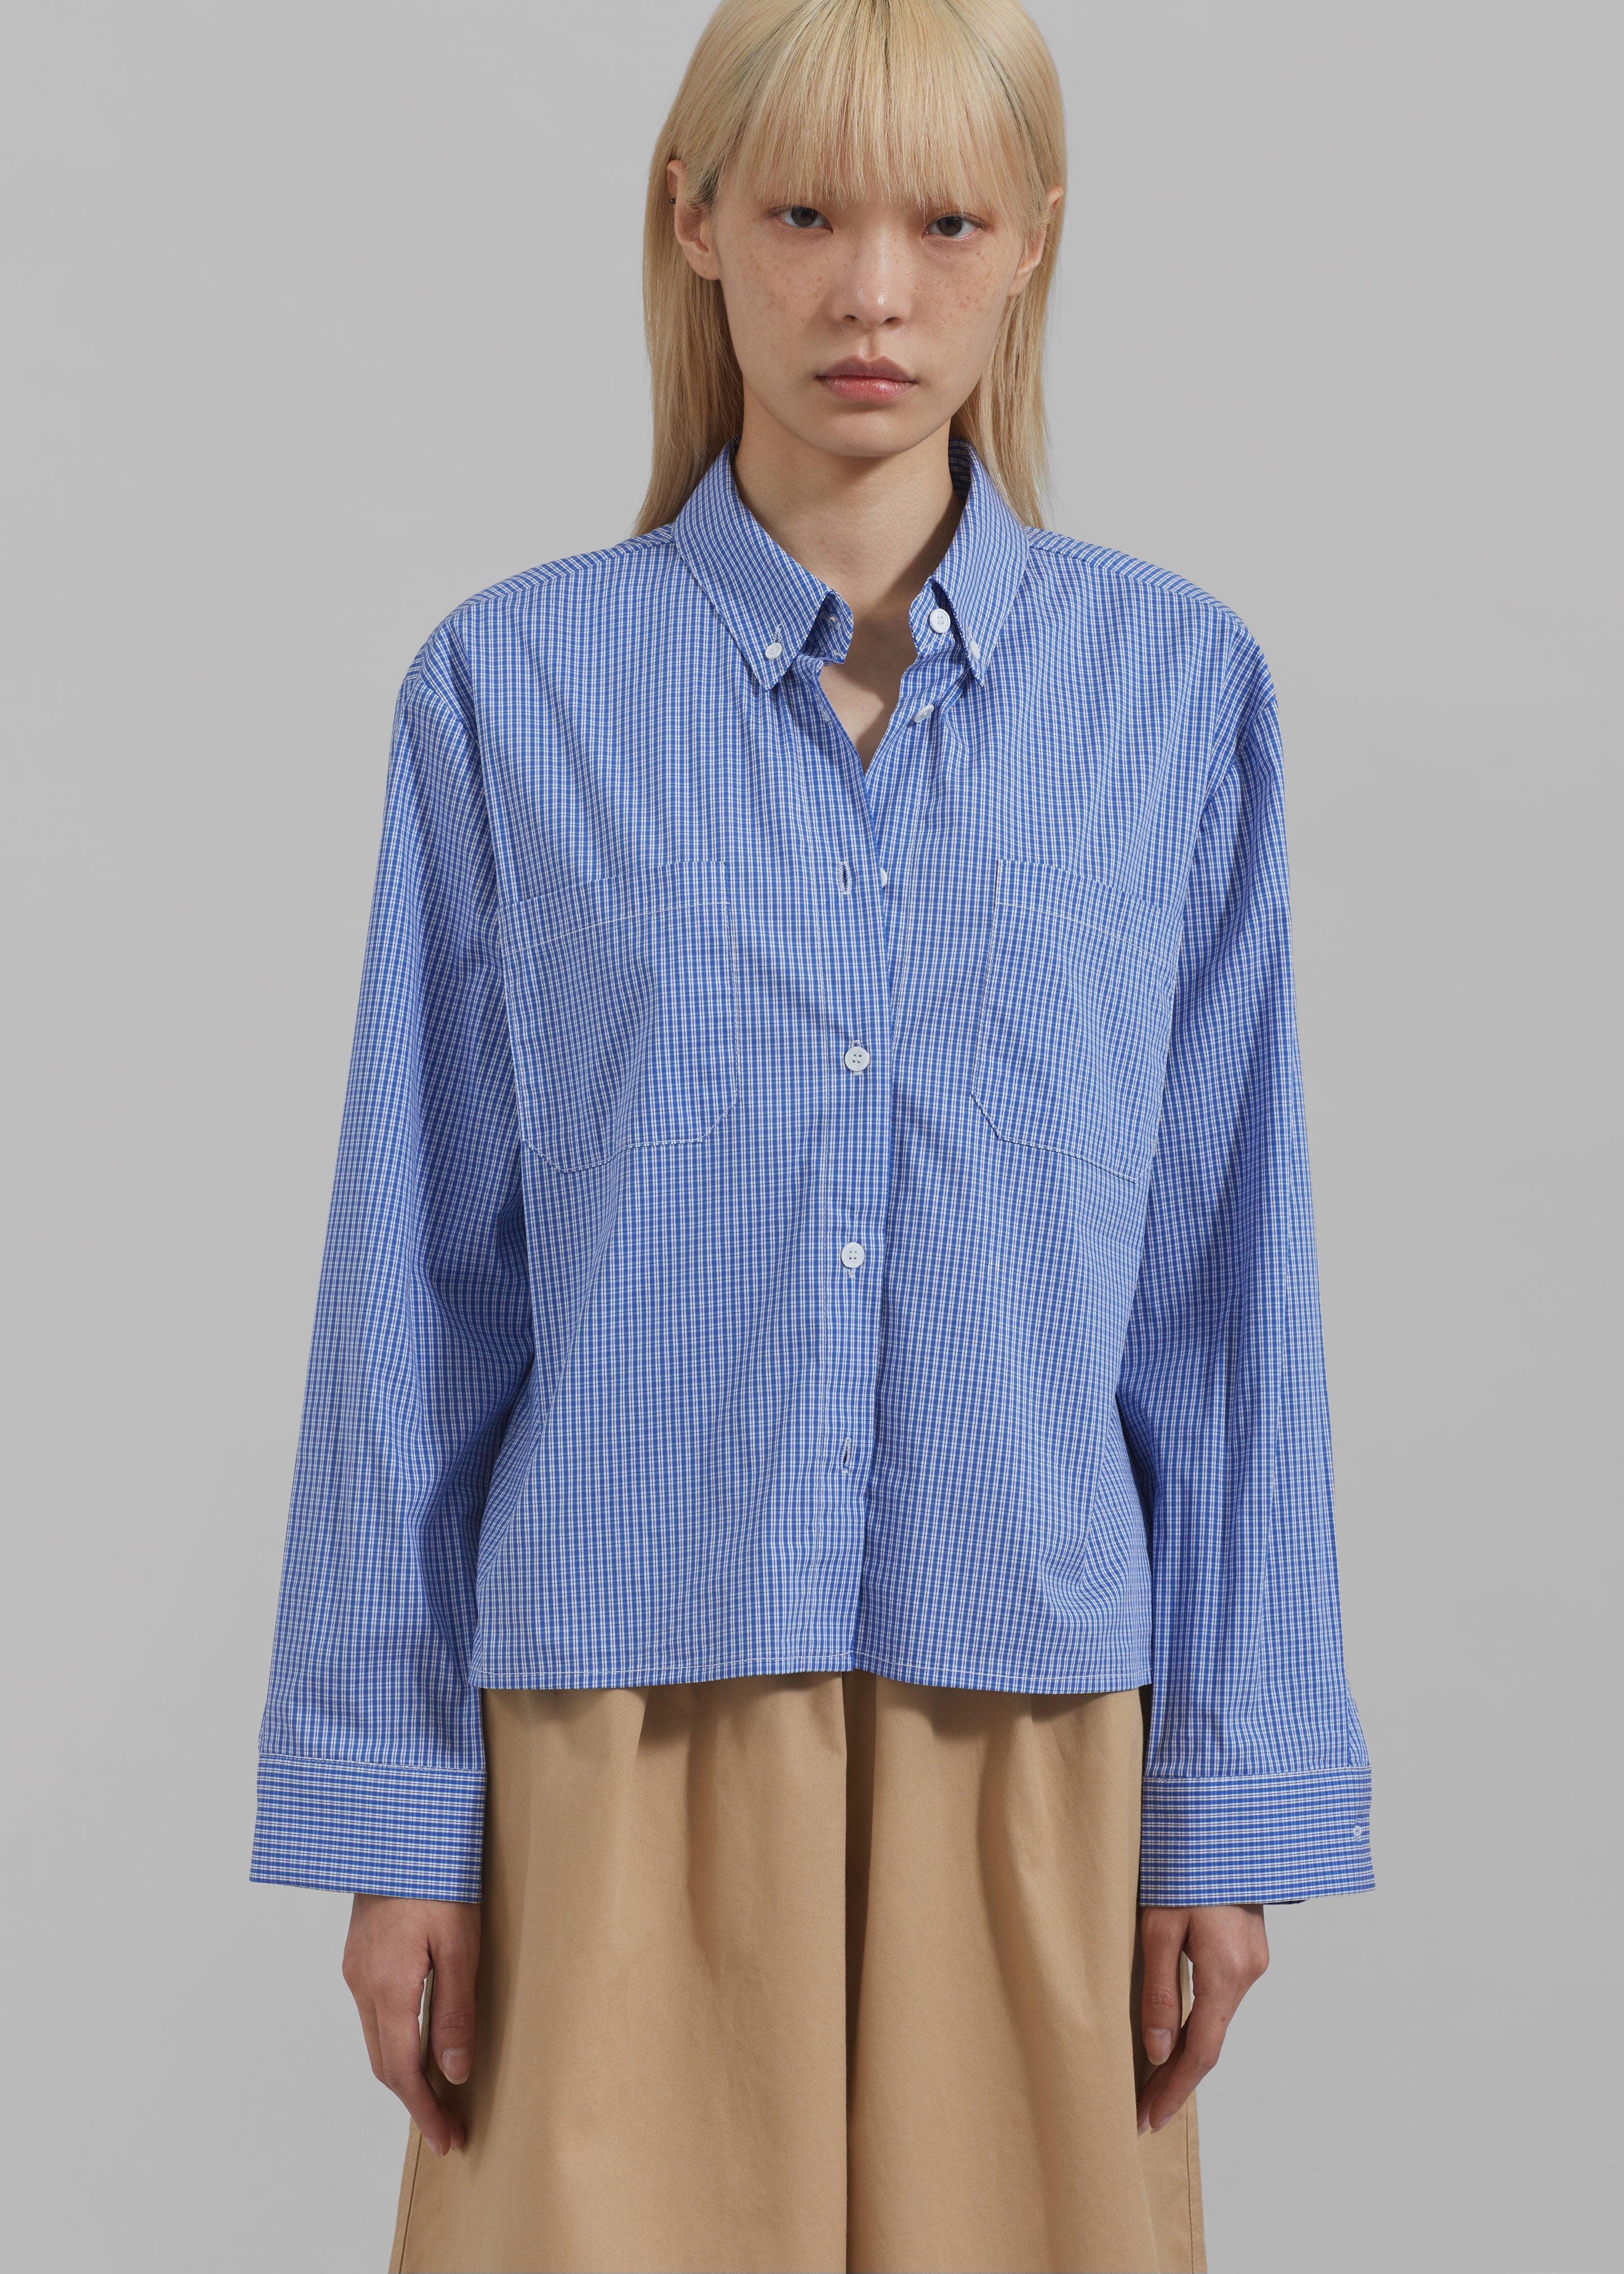 Kessa Gingham Button Up Shirt - Blue - 6